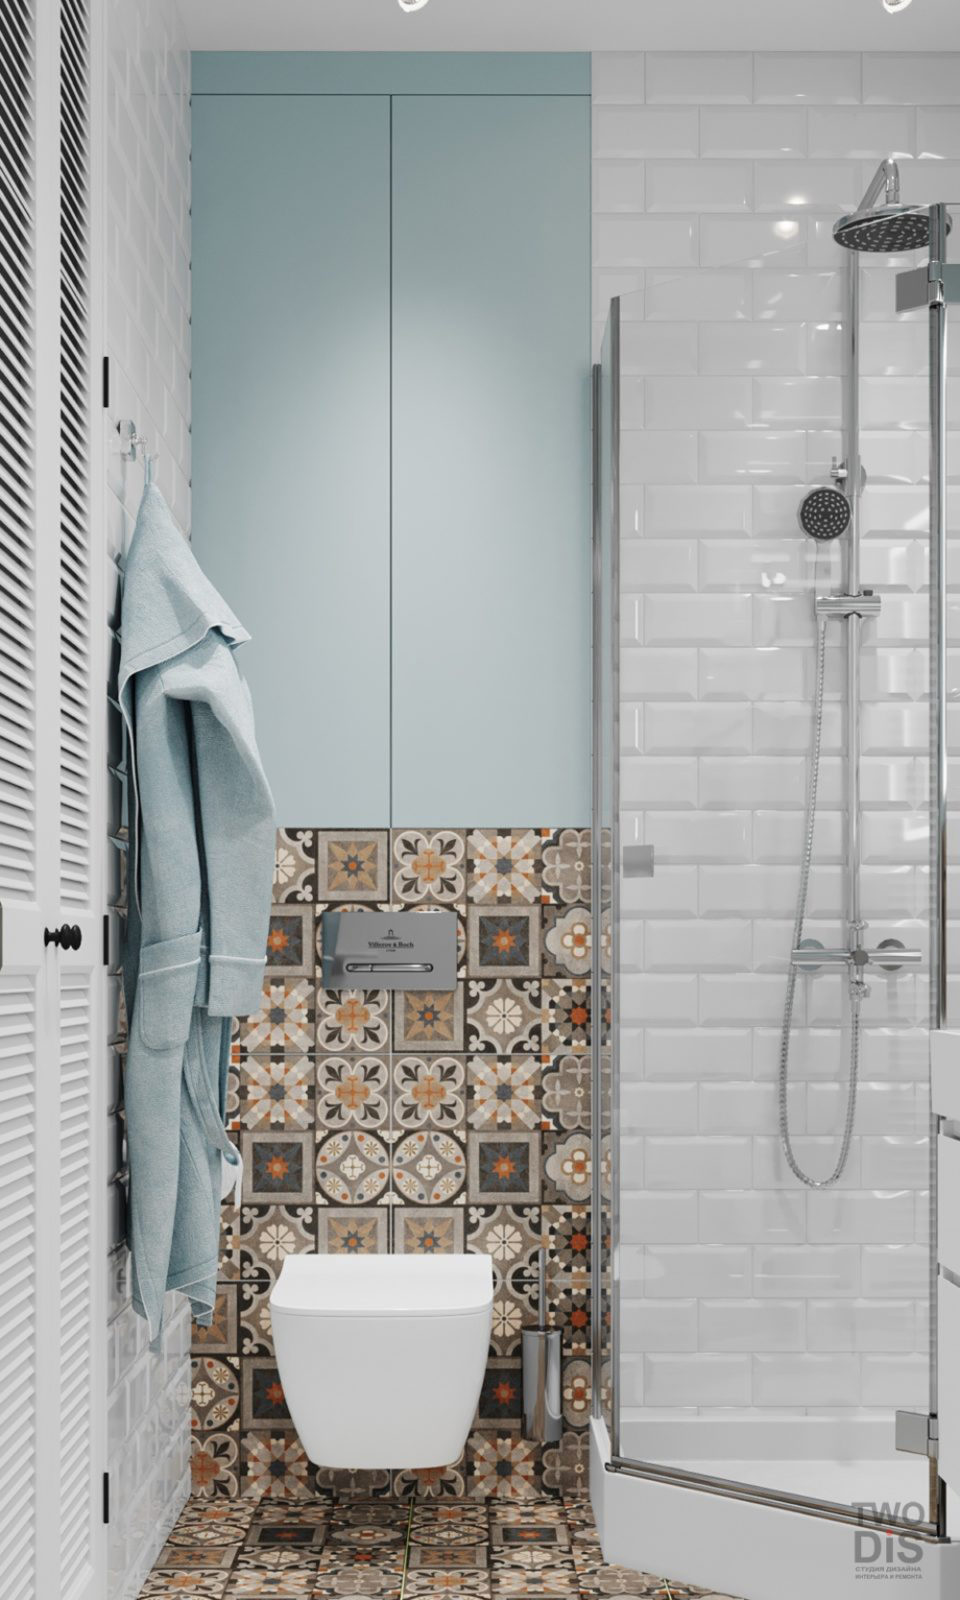 Дизайн проект квартиры ЖК Шушары - ванная комната однокомнатной студии, Санкт-Петербург